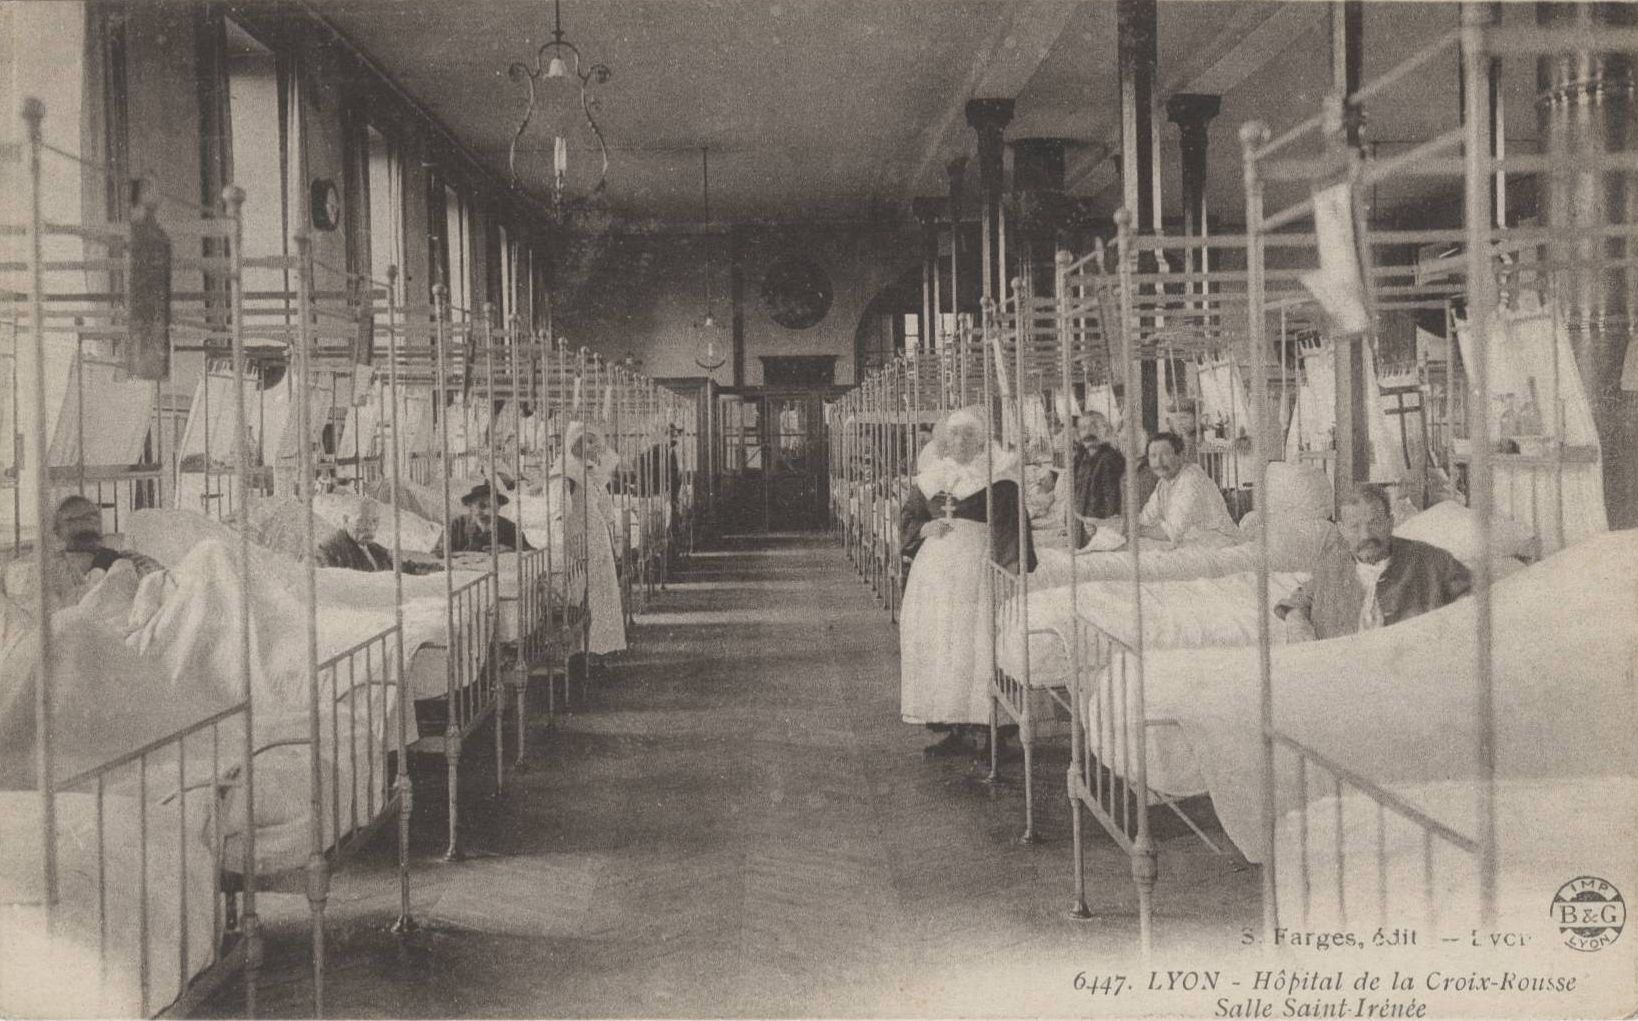 Lyon - Hôpital de la Croix-Rousse, salle Saint-Irénée : carte postale NB (vers 1910, cote : 4FI/3536)